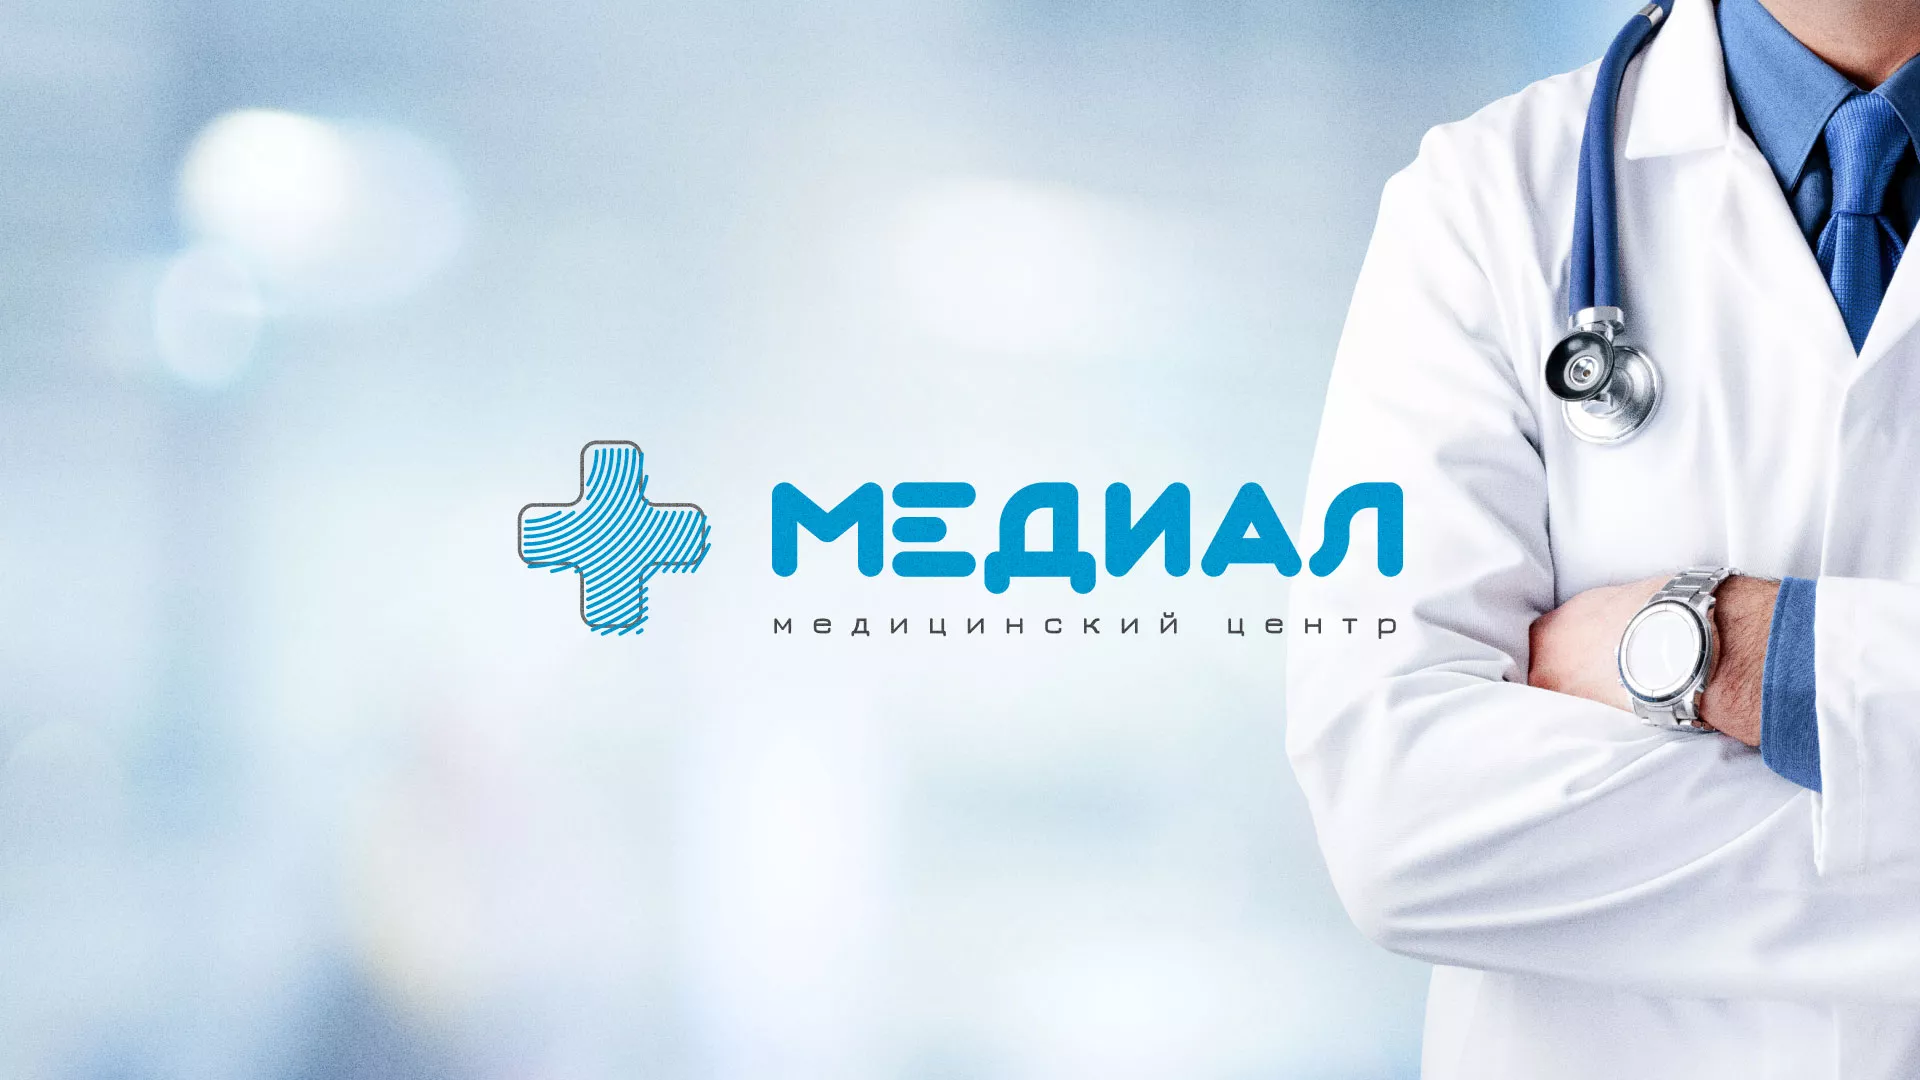 Создание сайта для медицинского центра «Медиал» в Красноярске